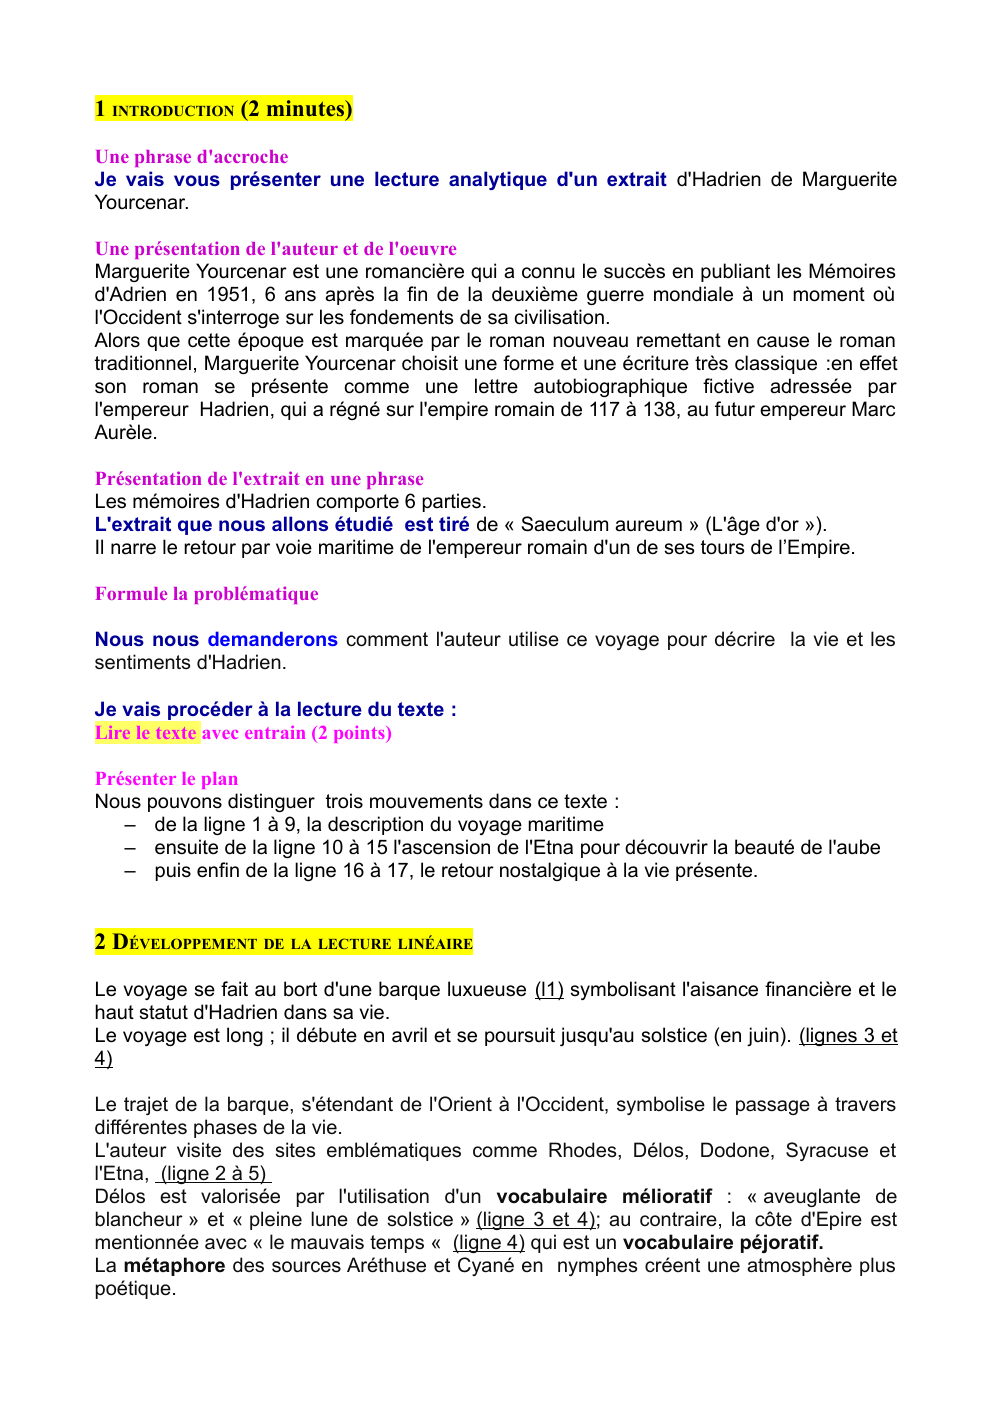 Prévisualisation du document analyse linéaire Hadrien de Marguerite Yourcenar